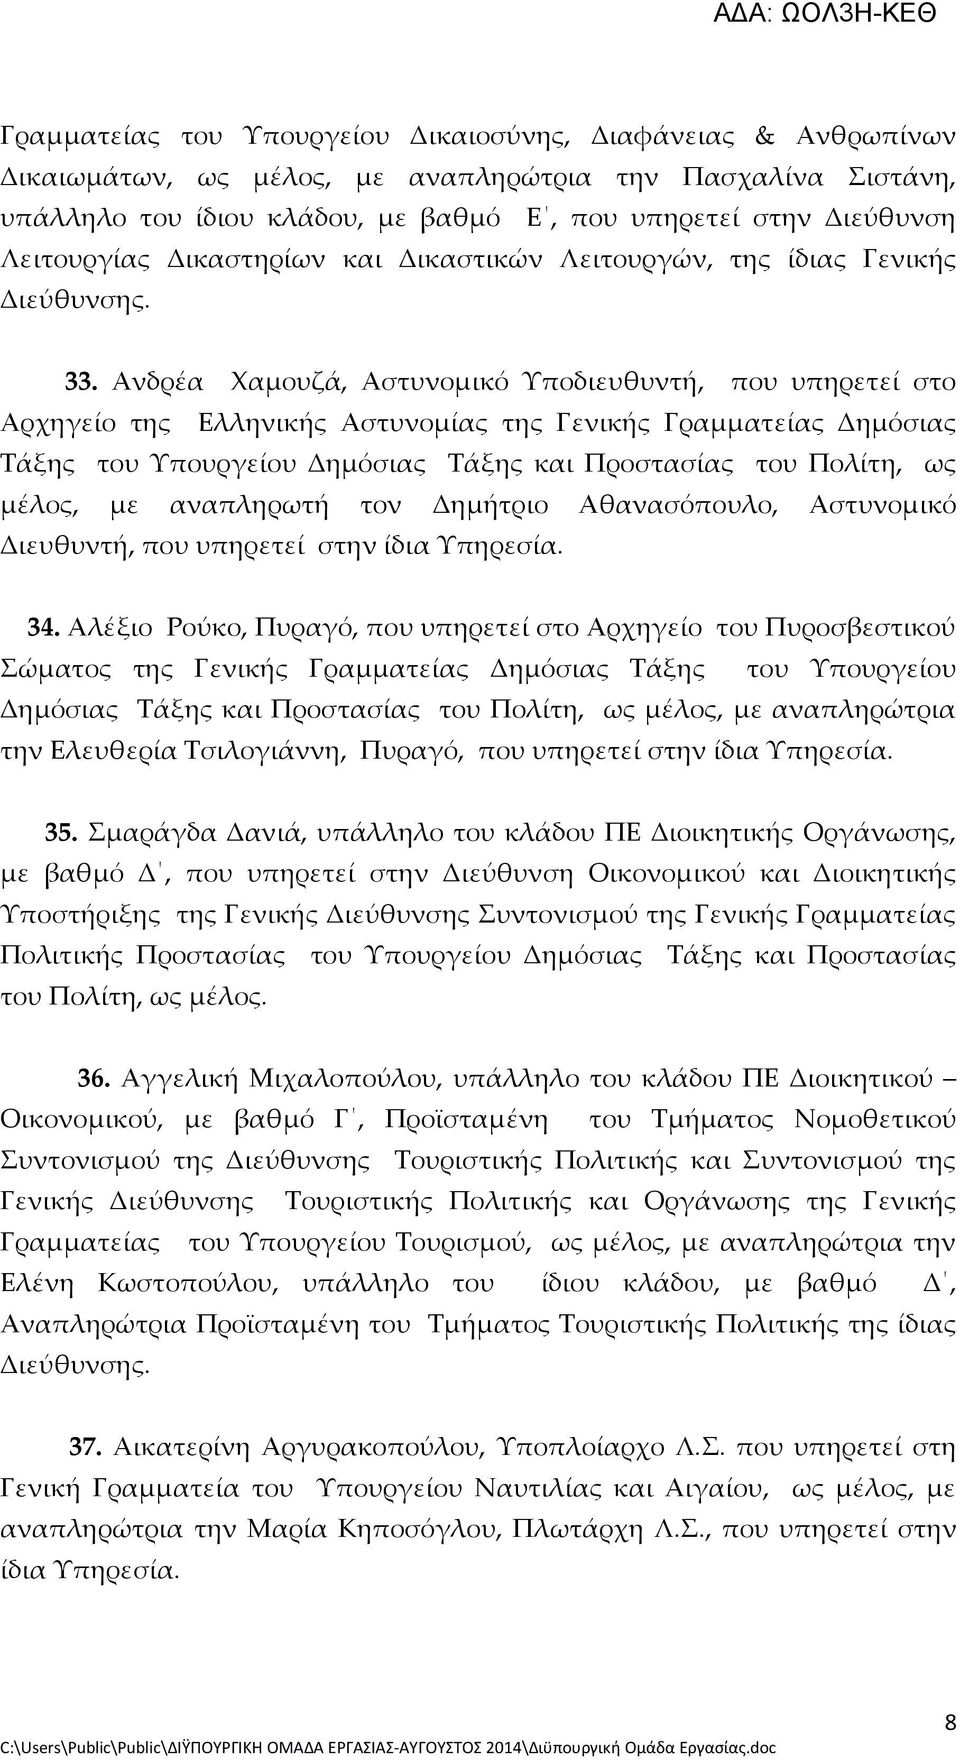 Ανδρέα Χαμουζά, Αστυνομικό Υποδιευθυντή, που υπηρετεί στο Αρχηγείο της Ελληνικής Αστυνομίας της Γενικής Γραμματείας Δημόσιας Τάξης του Υπουργείου Δημόσιας Τάξης και Προστασίας του Πολίτη, ως μέλος,